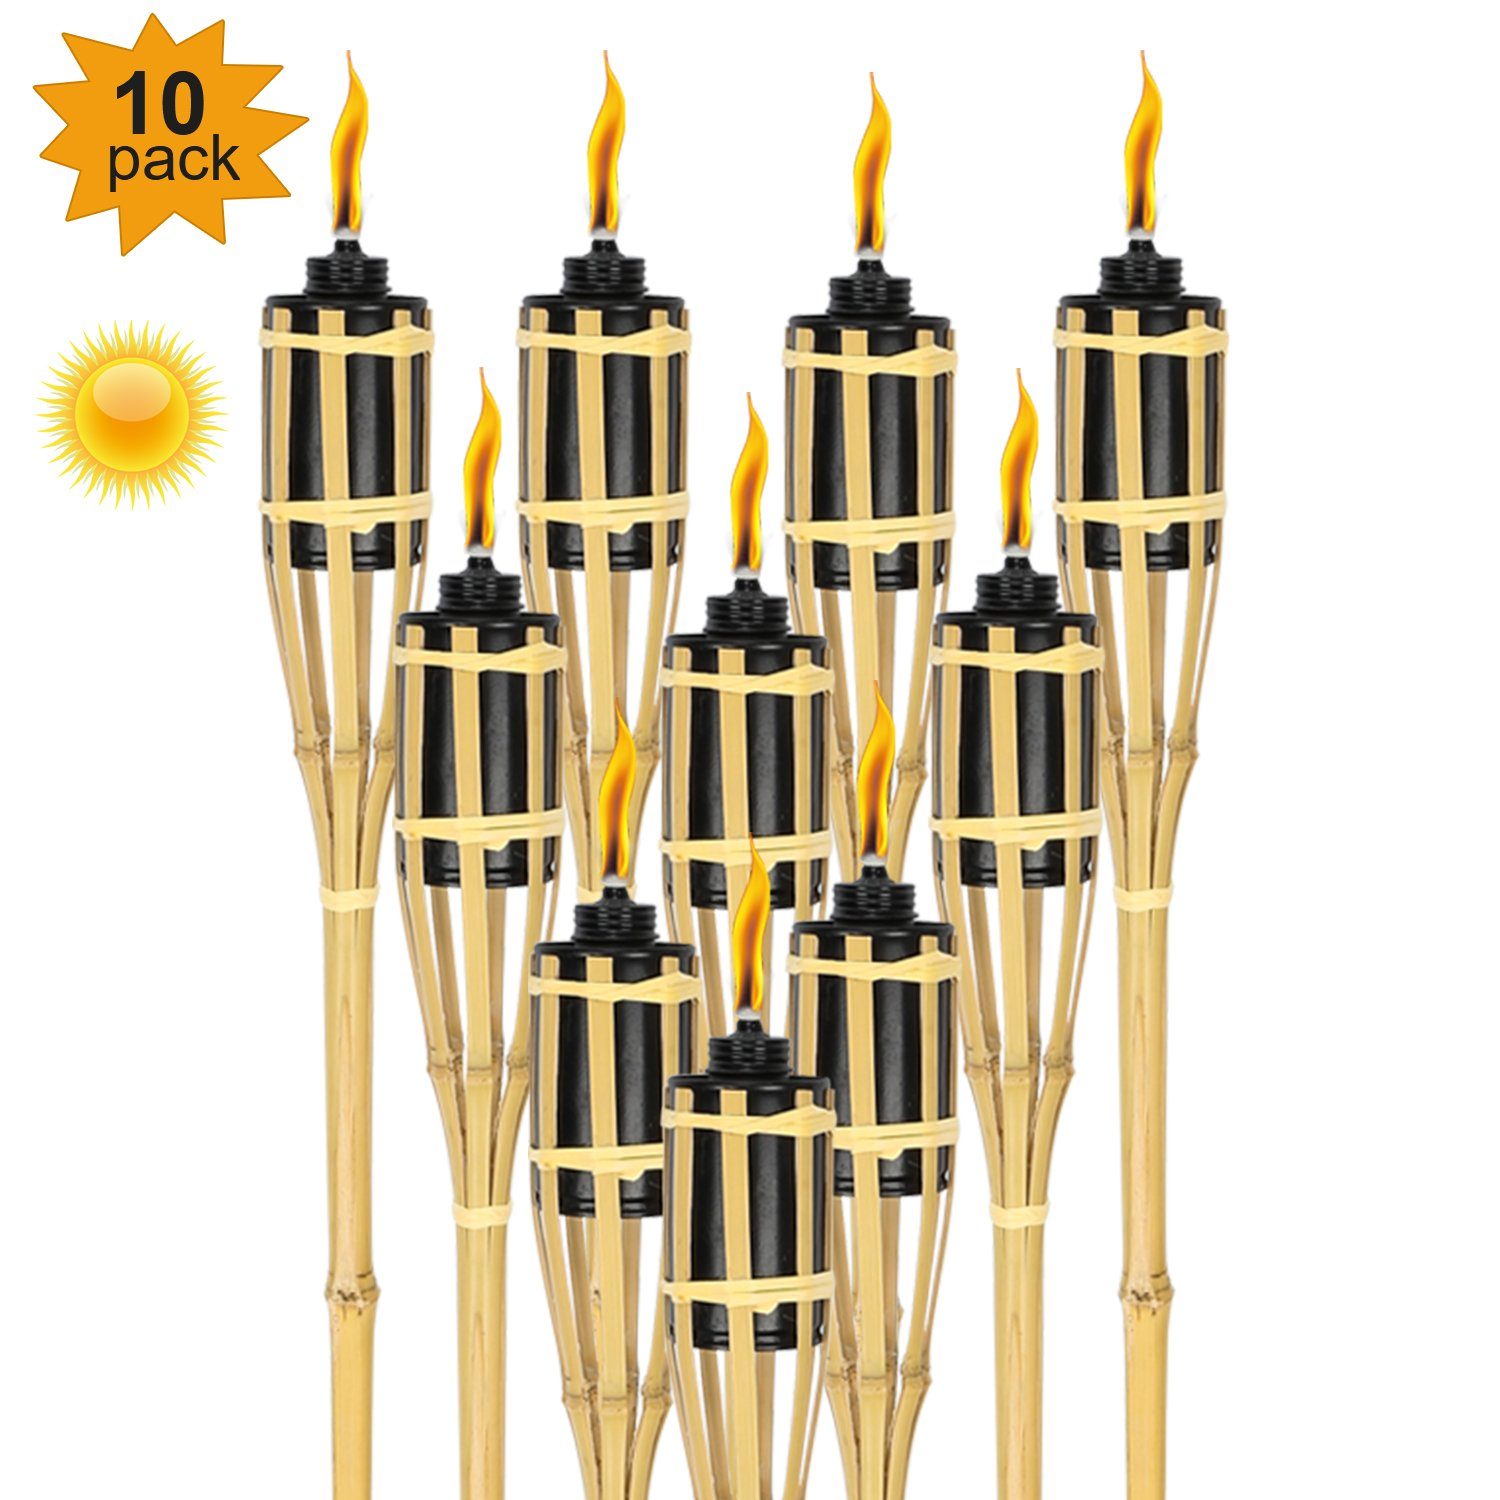 Gimisgu Gartenfackel Gartenfackel Fackel 10x Fackeln Flackernde 4-5 Std Flammenlicht Bambus, Festliche Dekoration